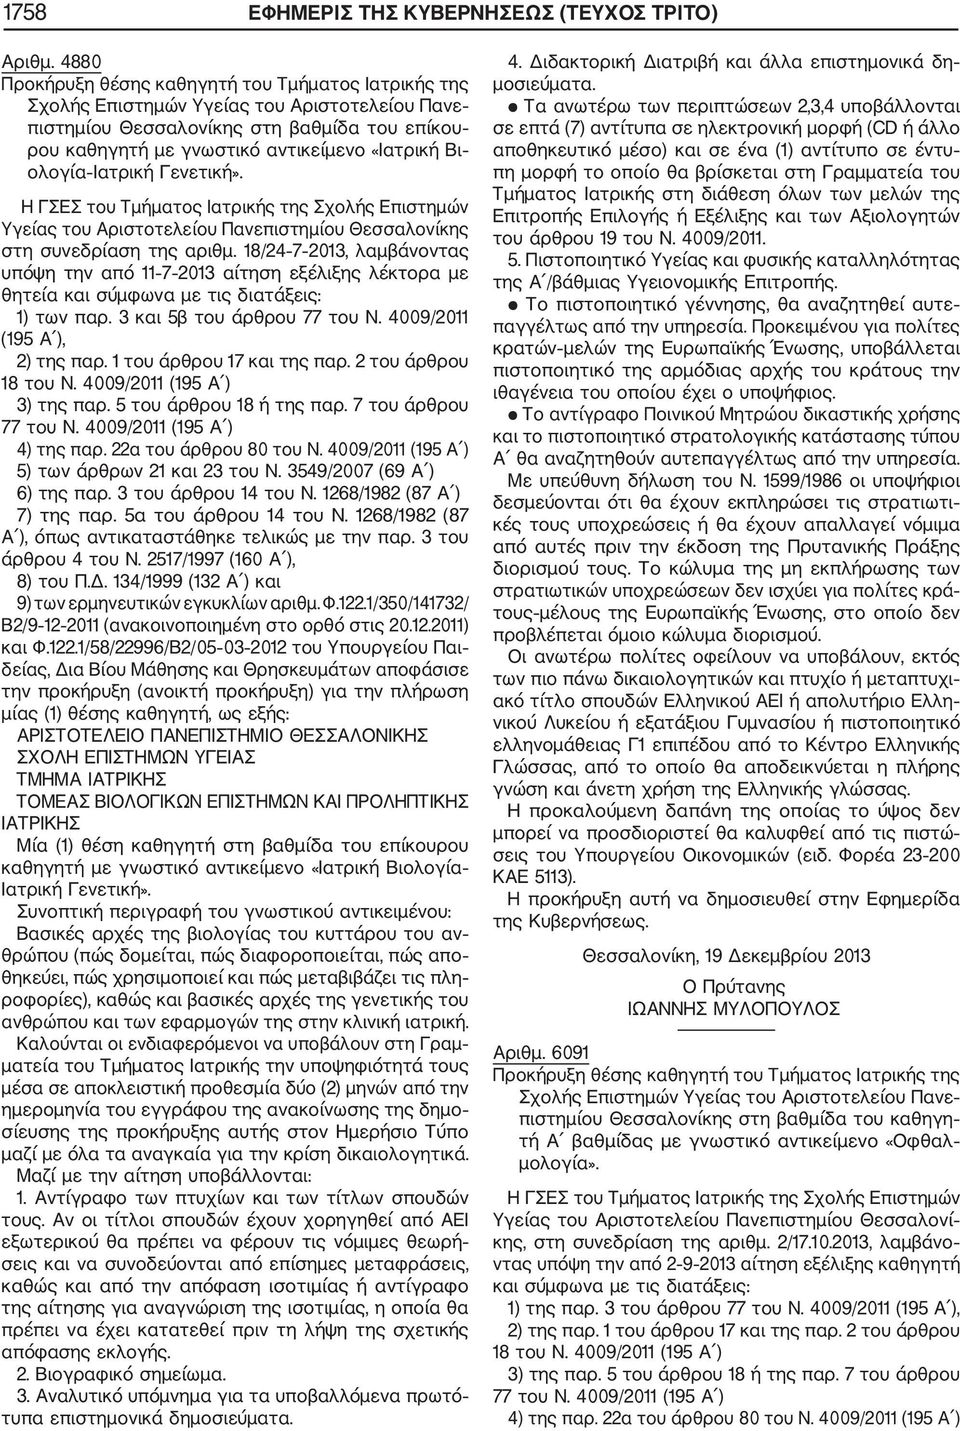 18/24 7 2013, λαμβάνοντας υπόψη την από 11 7 2013 αίτηση εξέλιξης λέκτορα με θητεία και σύμφωνα με τις διατάξεις: 1) των παρ. 3 και 5β του άρθρου 77 του Ν. 4009/2011 (195 Α ), 3) της παρ.